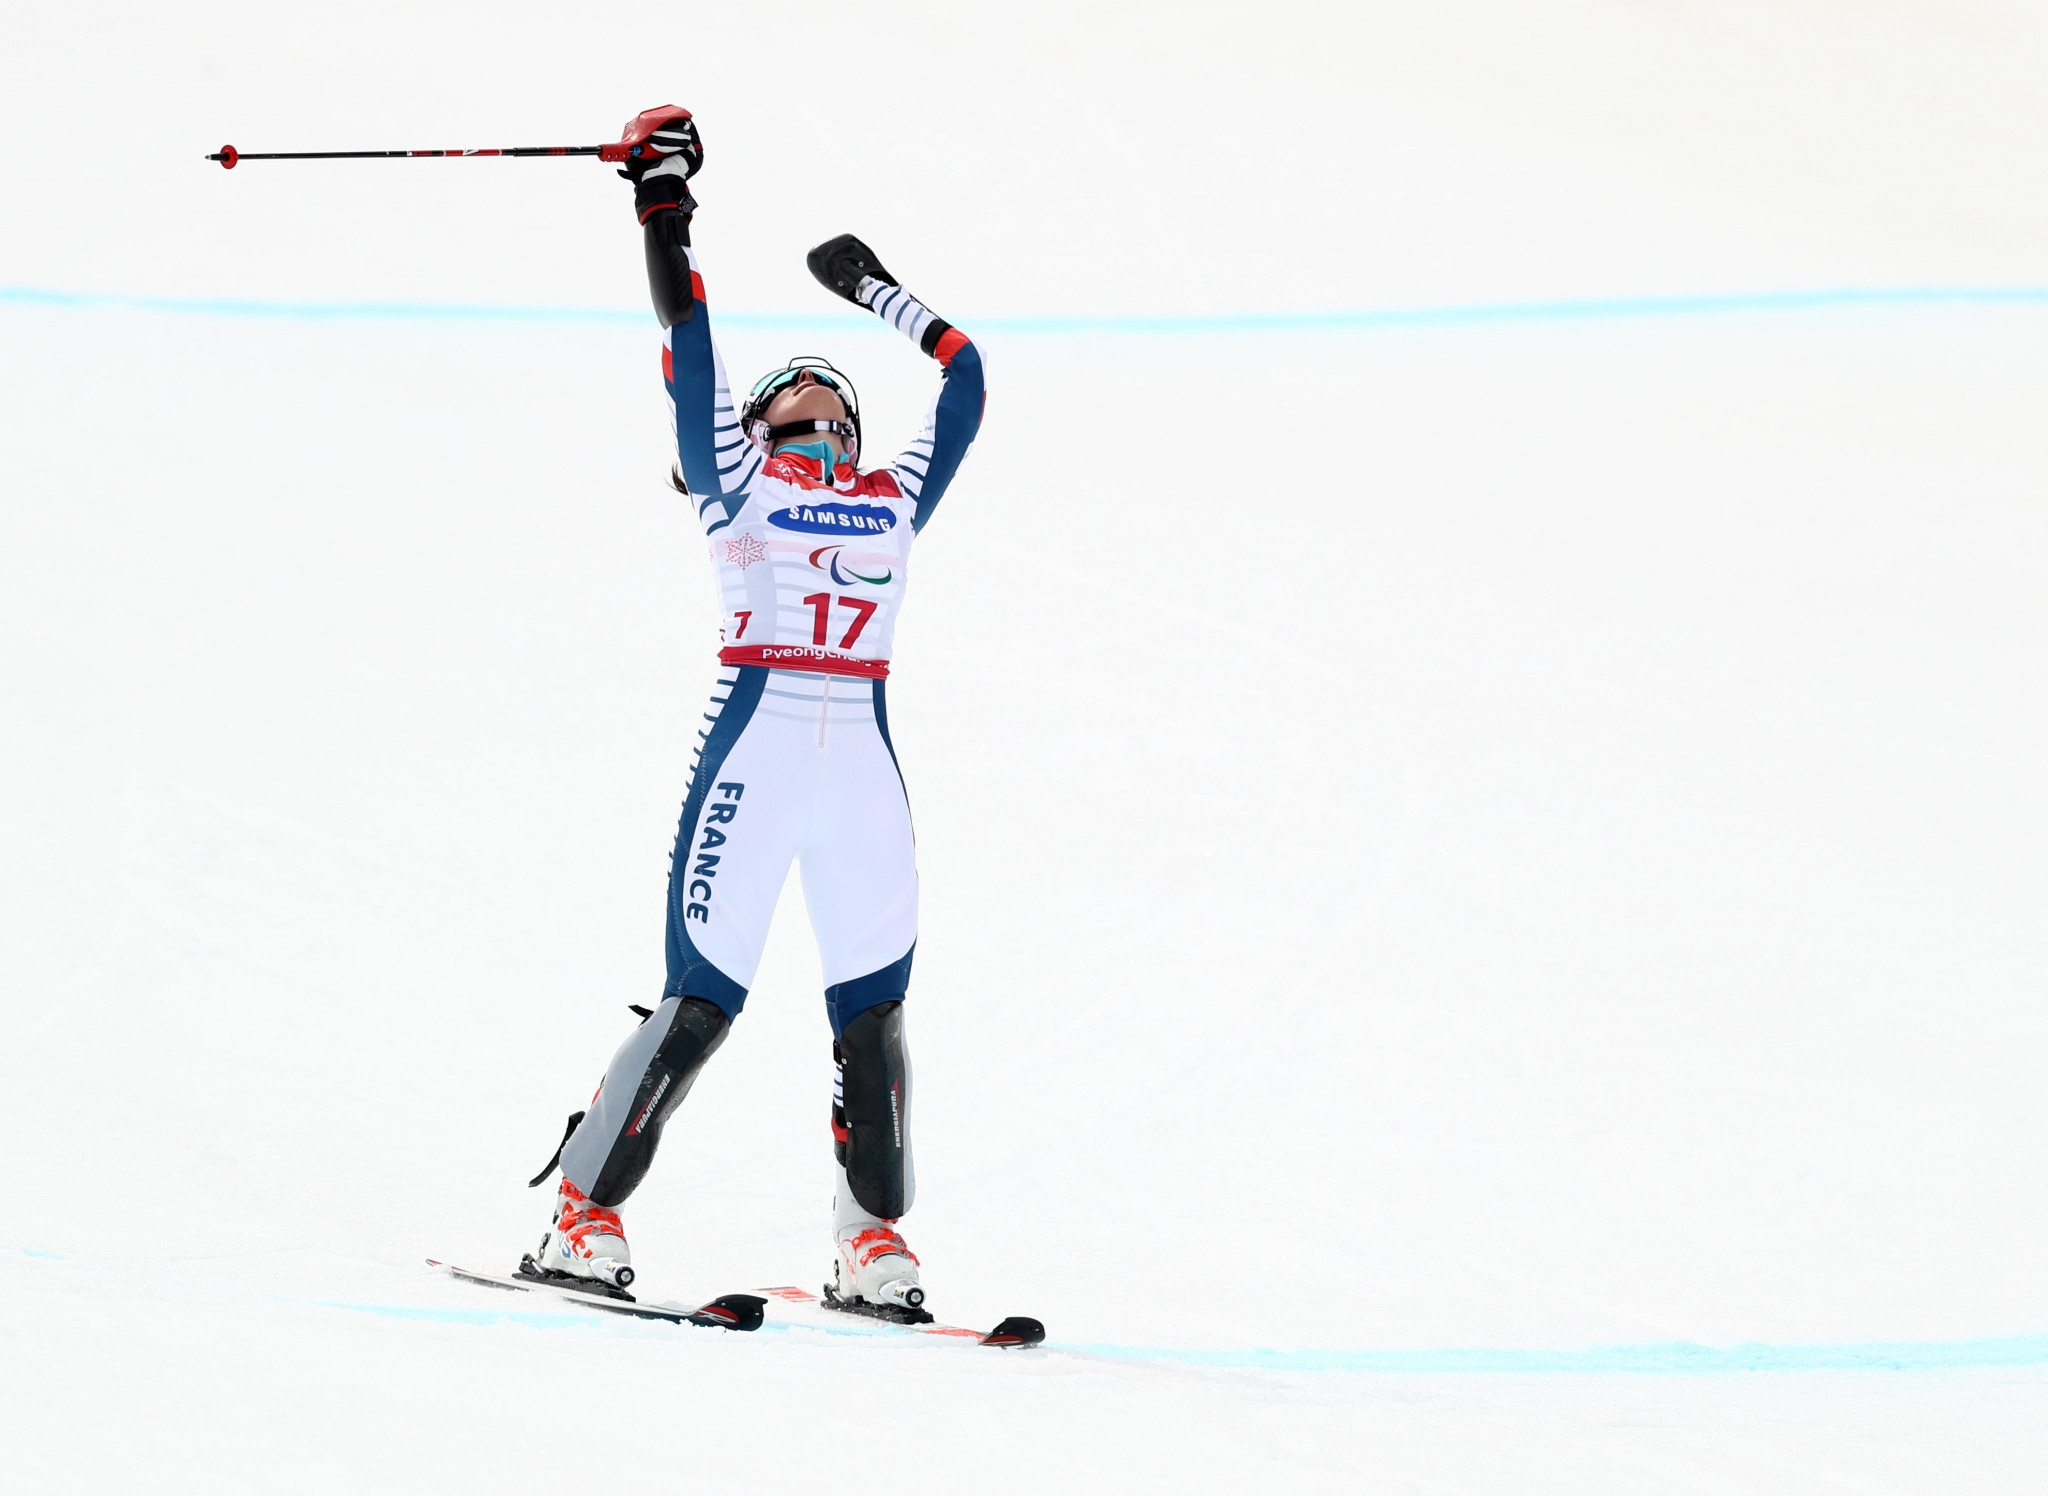 More gold for Bochet and Farkasova at World Para Alpine Skiing Championships